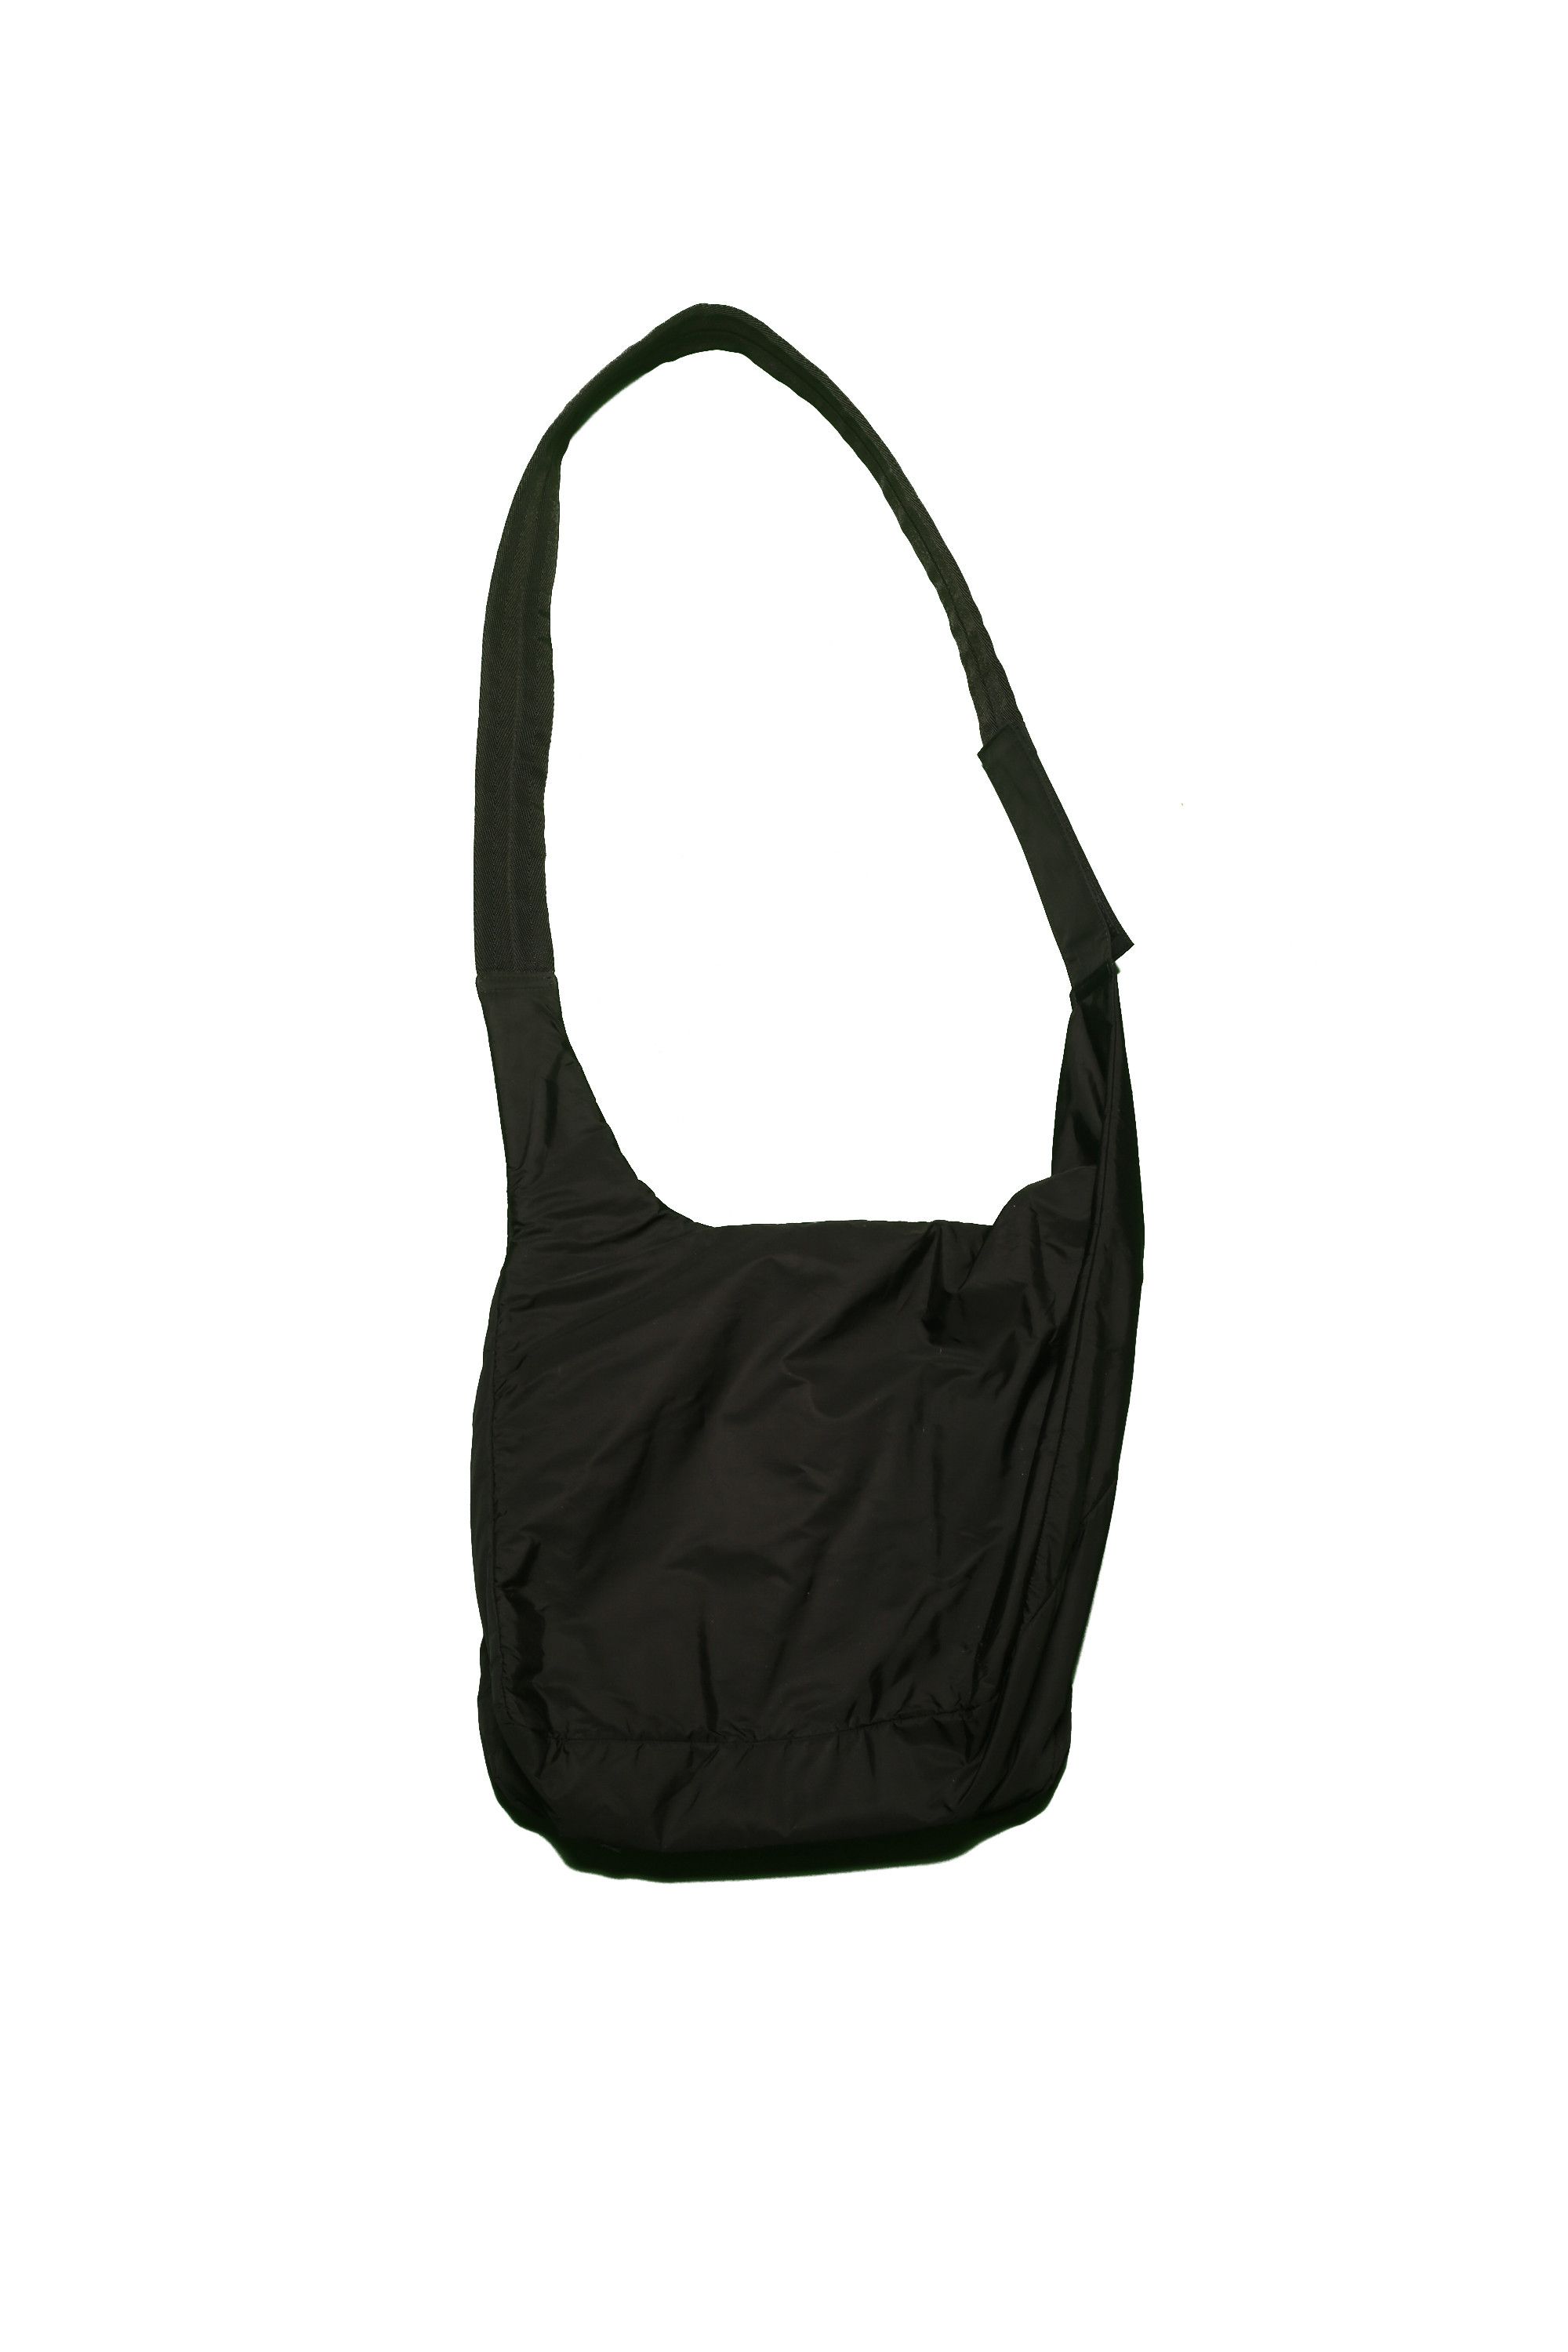 Prada Prada Transparent Shoulder Bag Size ONE SIZE - 2 Preview